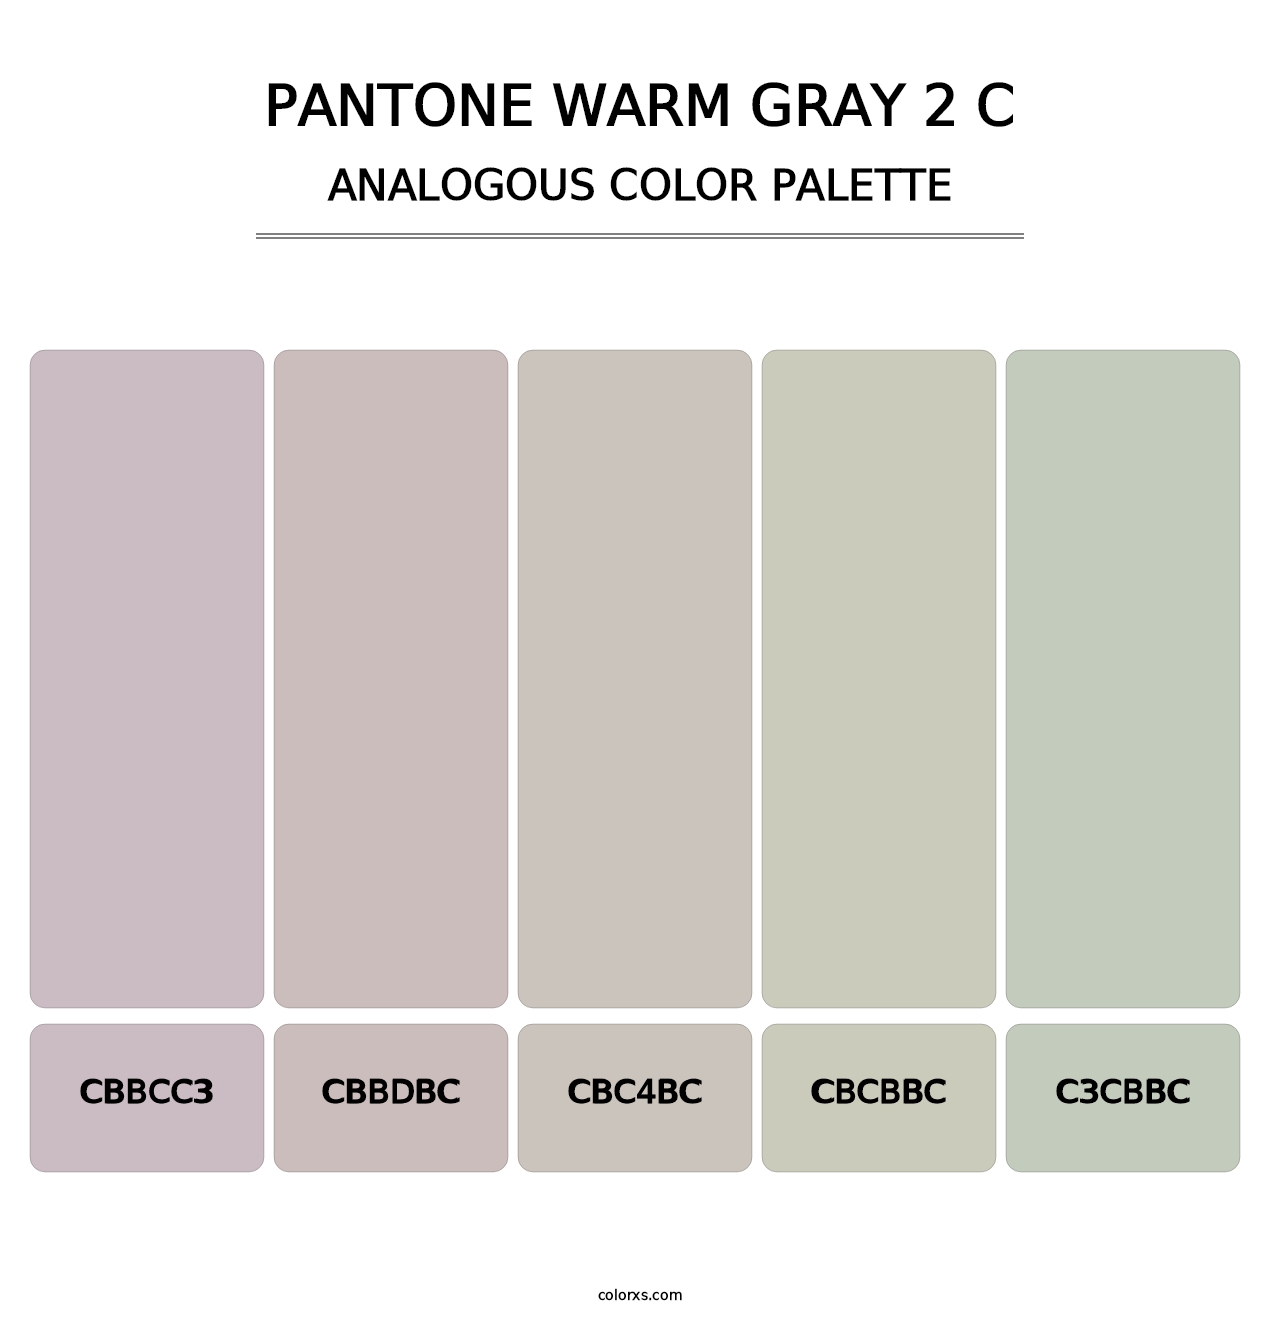 PANTONE Warm Gray 2 C - Analogous Color Palette